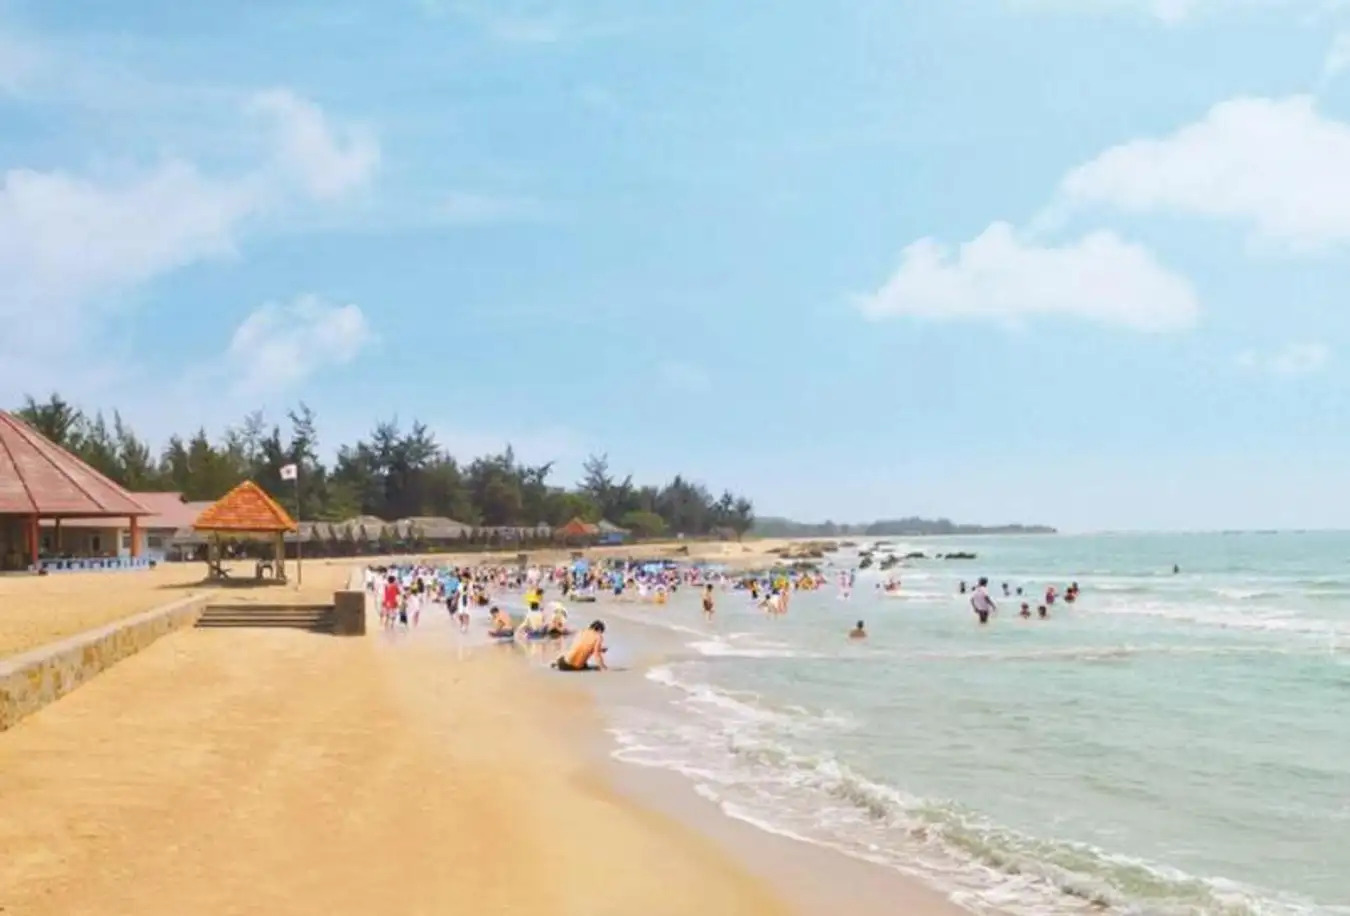 Hồ Cốc là một bãi biển thuộc xã Hưng Biền, huyện Xuyên Mộc, tỉnh Bà Rịa - Vũng Tàu, Việt Nam.